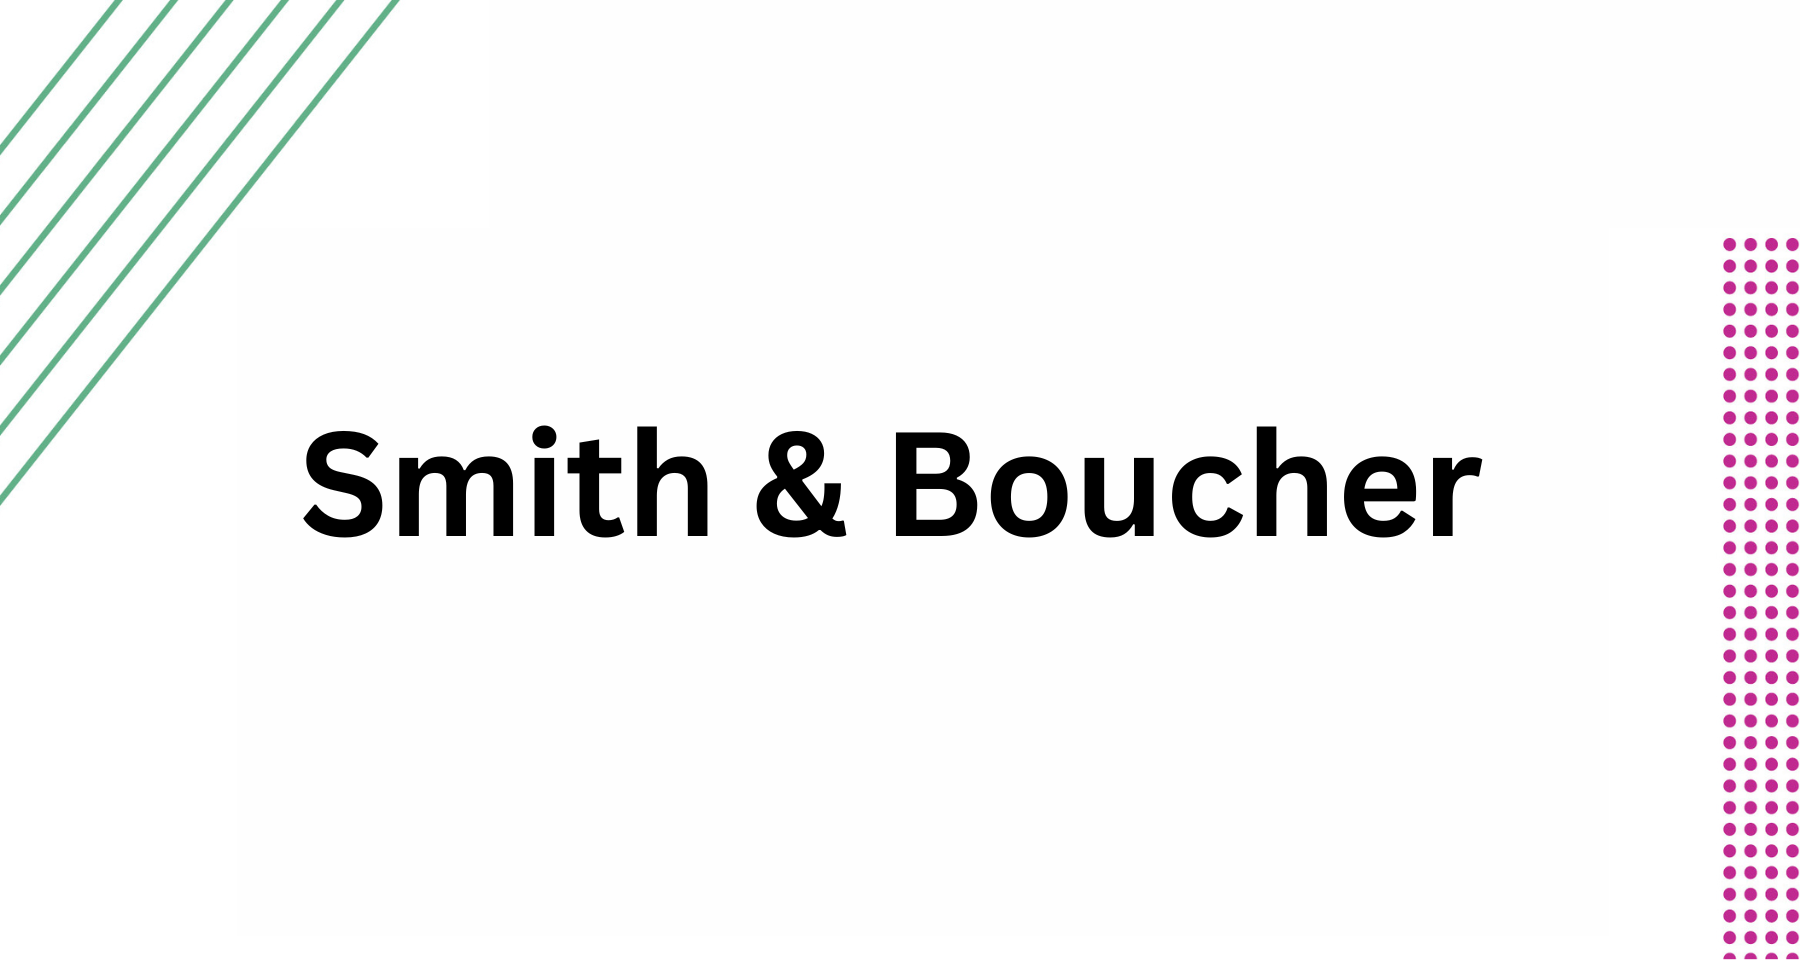 Smith & Boucher